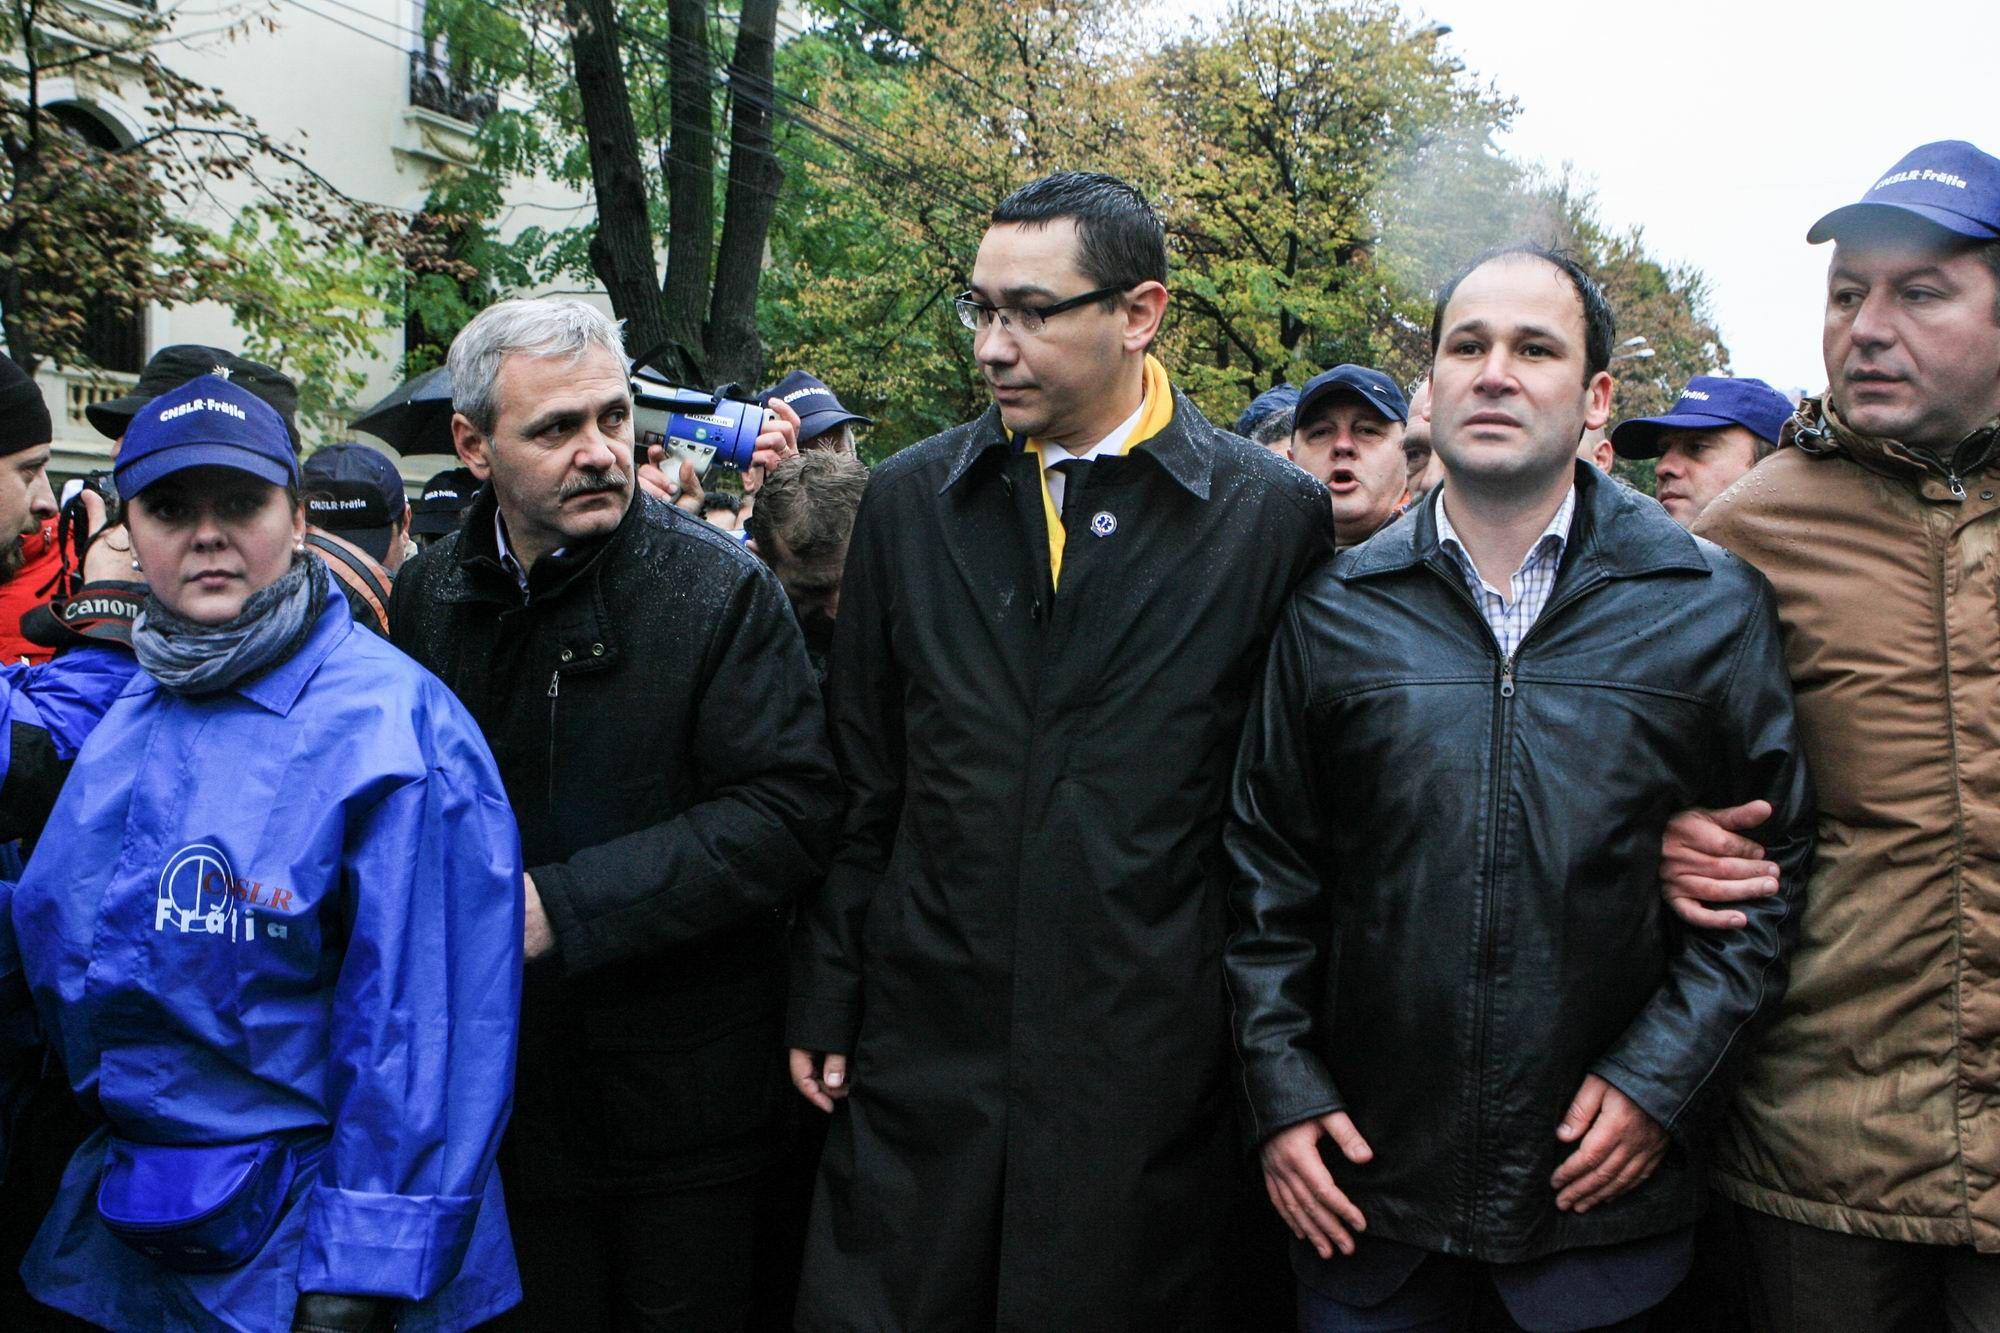 Atât Liviu Dragnea, cât și Victor Ponta au avut discursuri eurosceptice. Foto: Lucian Muntean